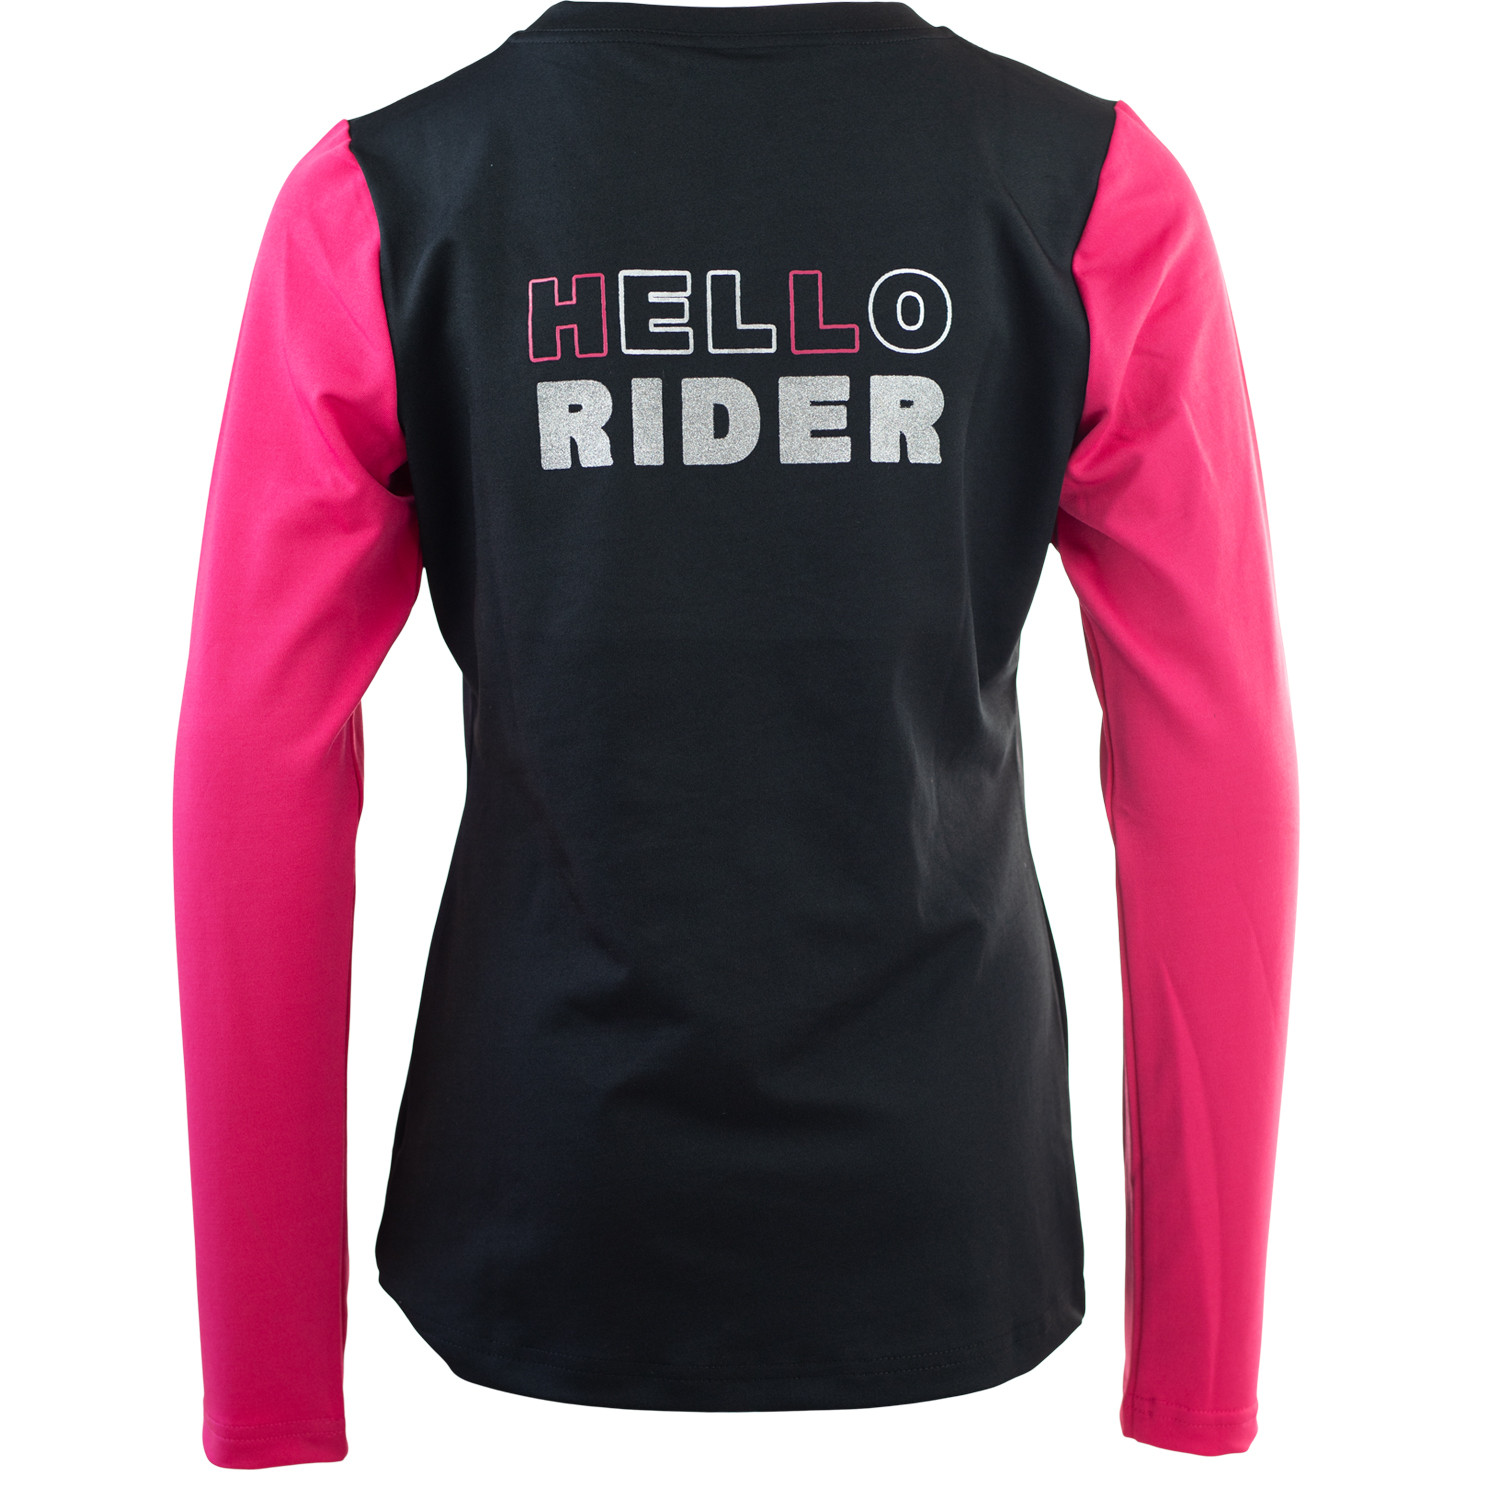 Tröja Hello rider JR